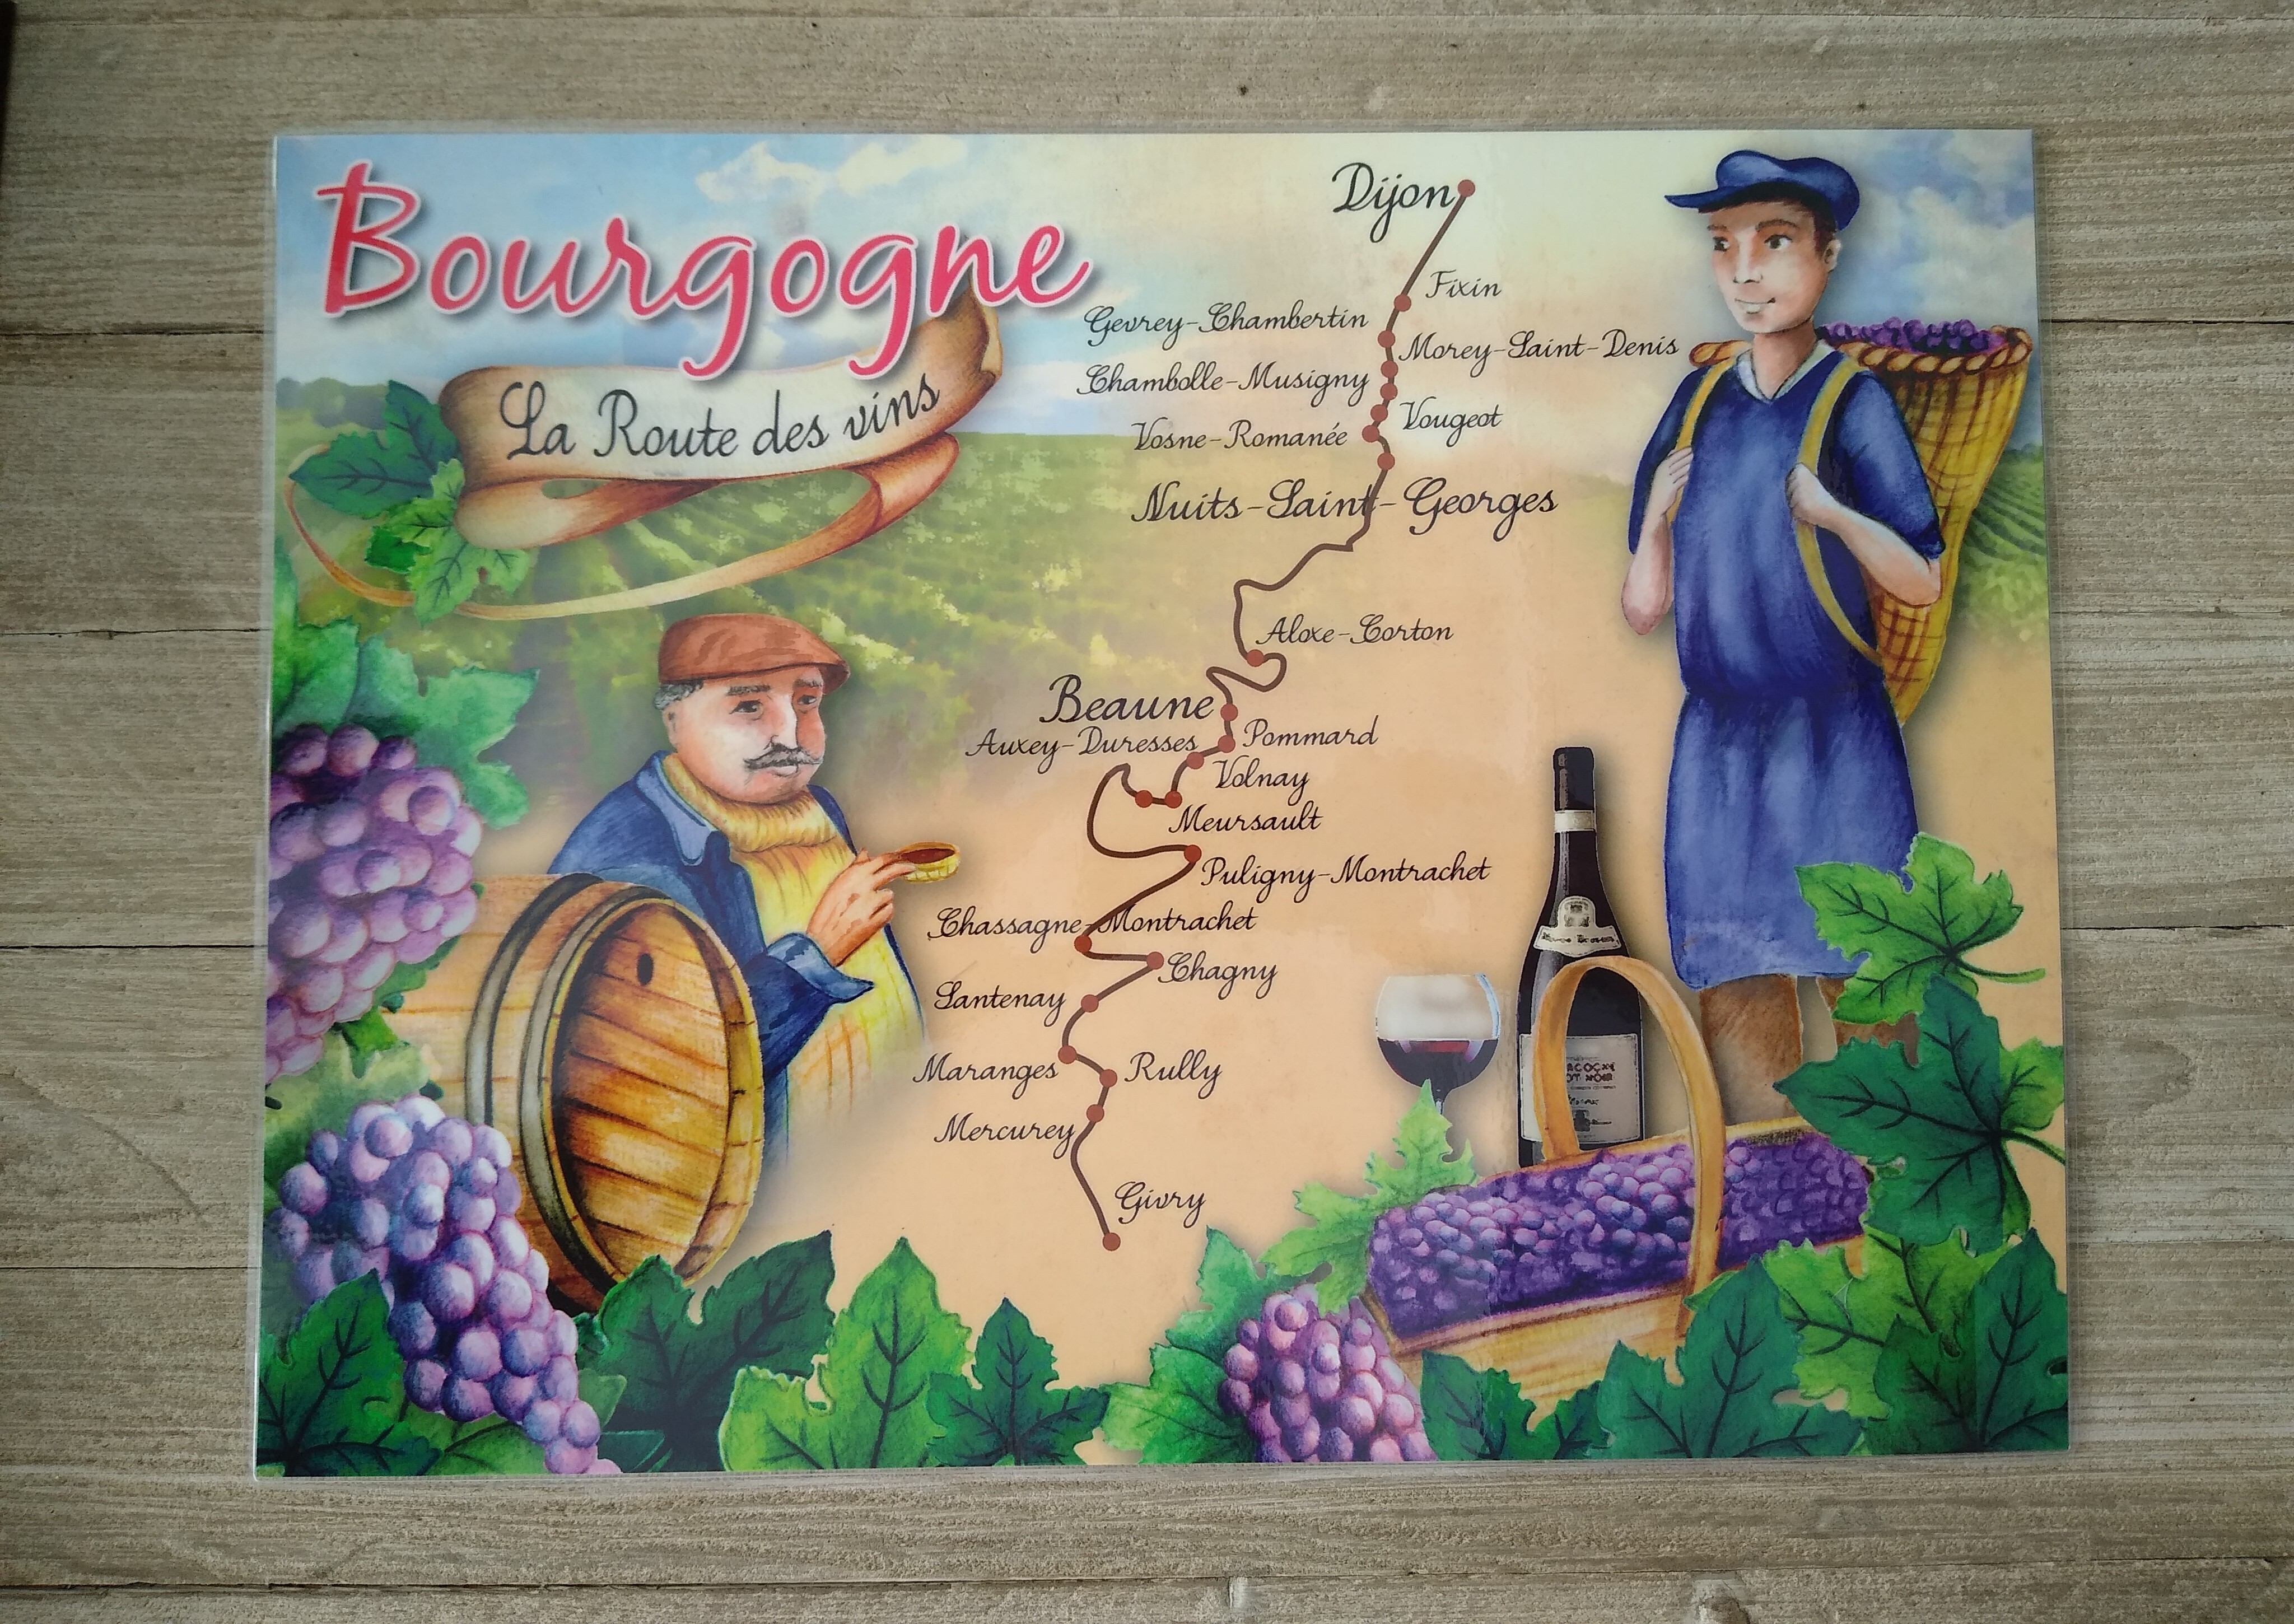 Set de Table Le Langage des Couverts ref1 - Cartes des vins de France